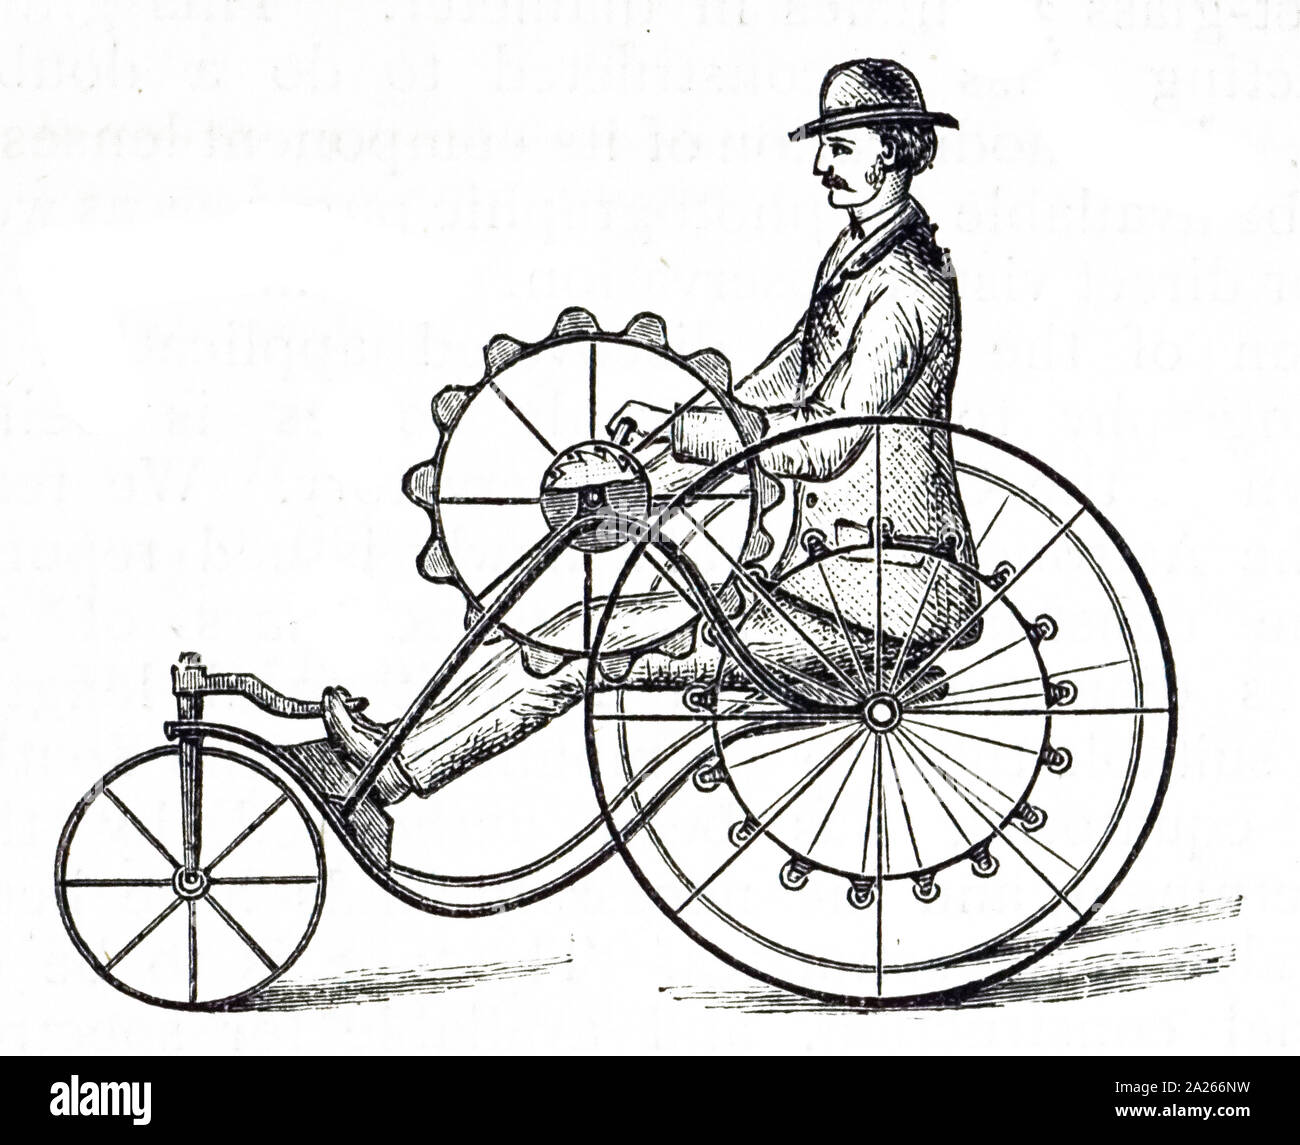 Eine Gravur mit einem Dreirad durch eine Kurbel, die auf dem Vorderrad angetrieben. Des Reiters Füße ruhten sich Steigbügel zu schnüren, die zu den Hinterrädern befestigt und die Maschine auf diese Weise gesteuert. Vom 19. Jahrhundert Stockfoto